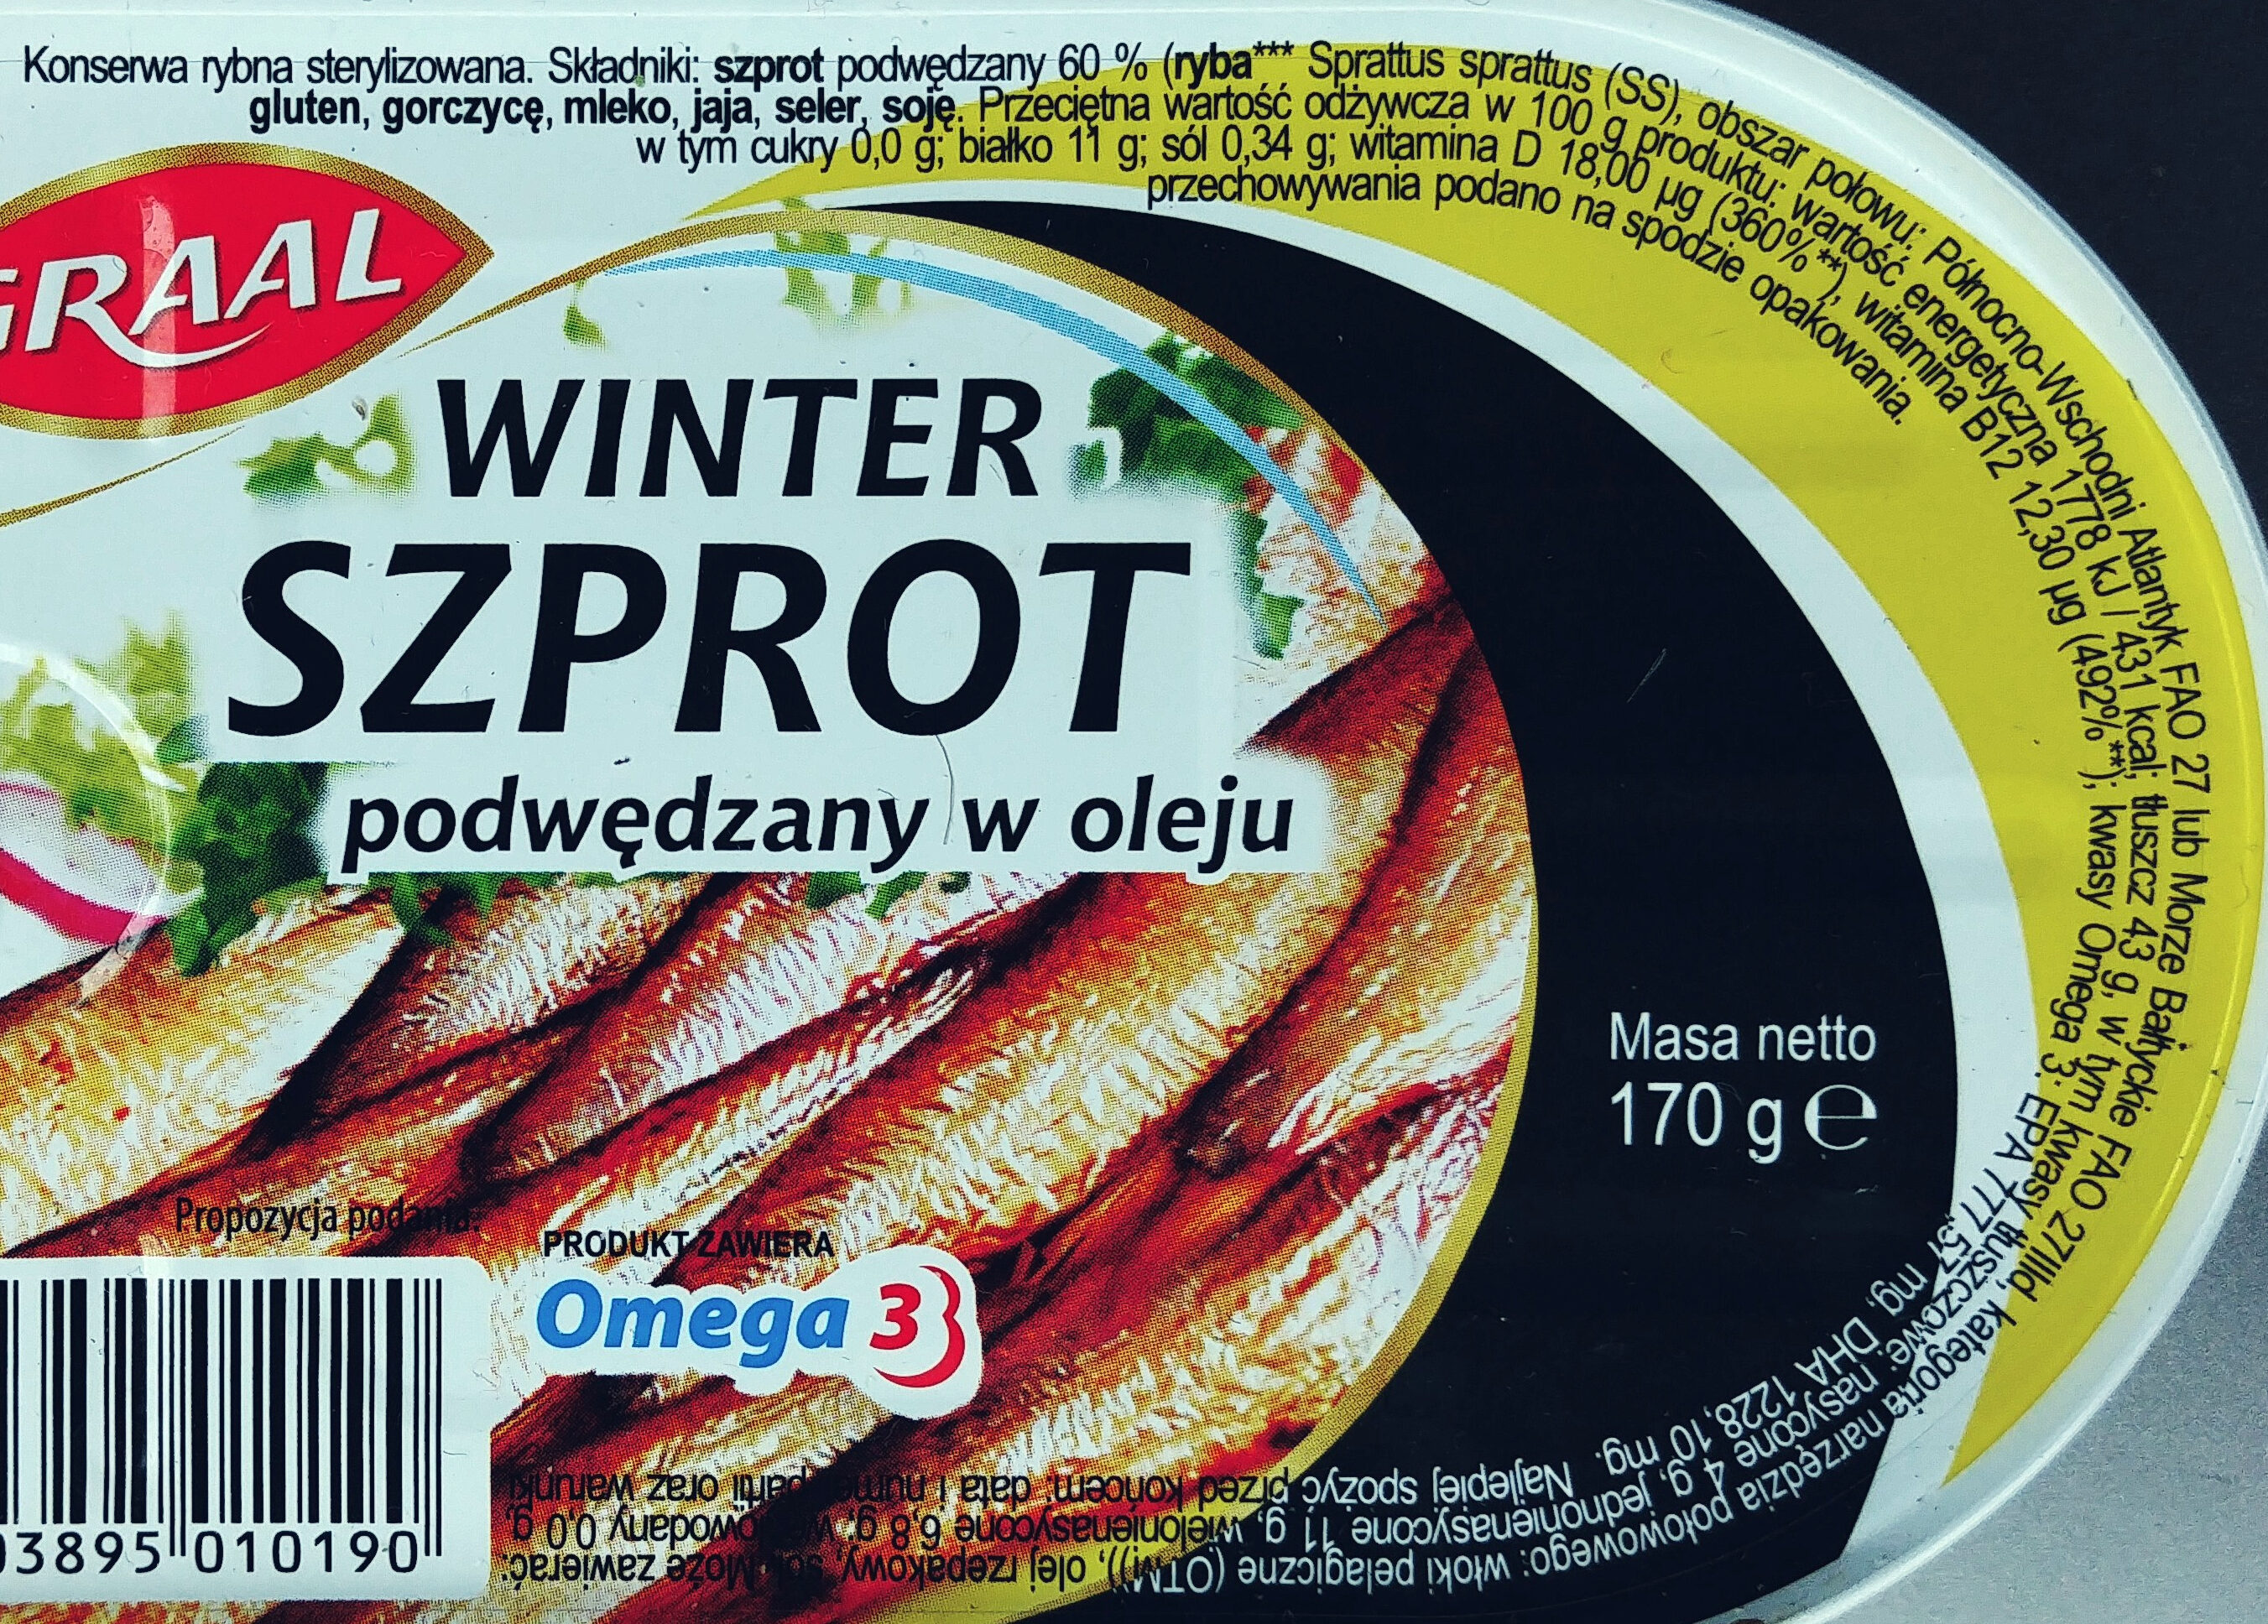 Winter szprot podwędzany w oleju - Ingredients - pl